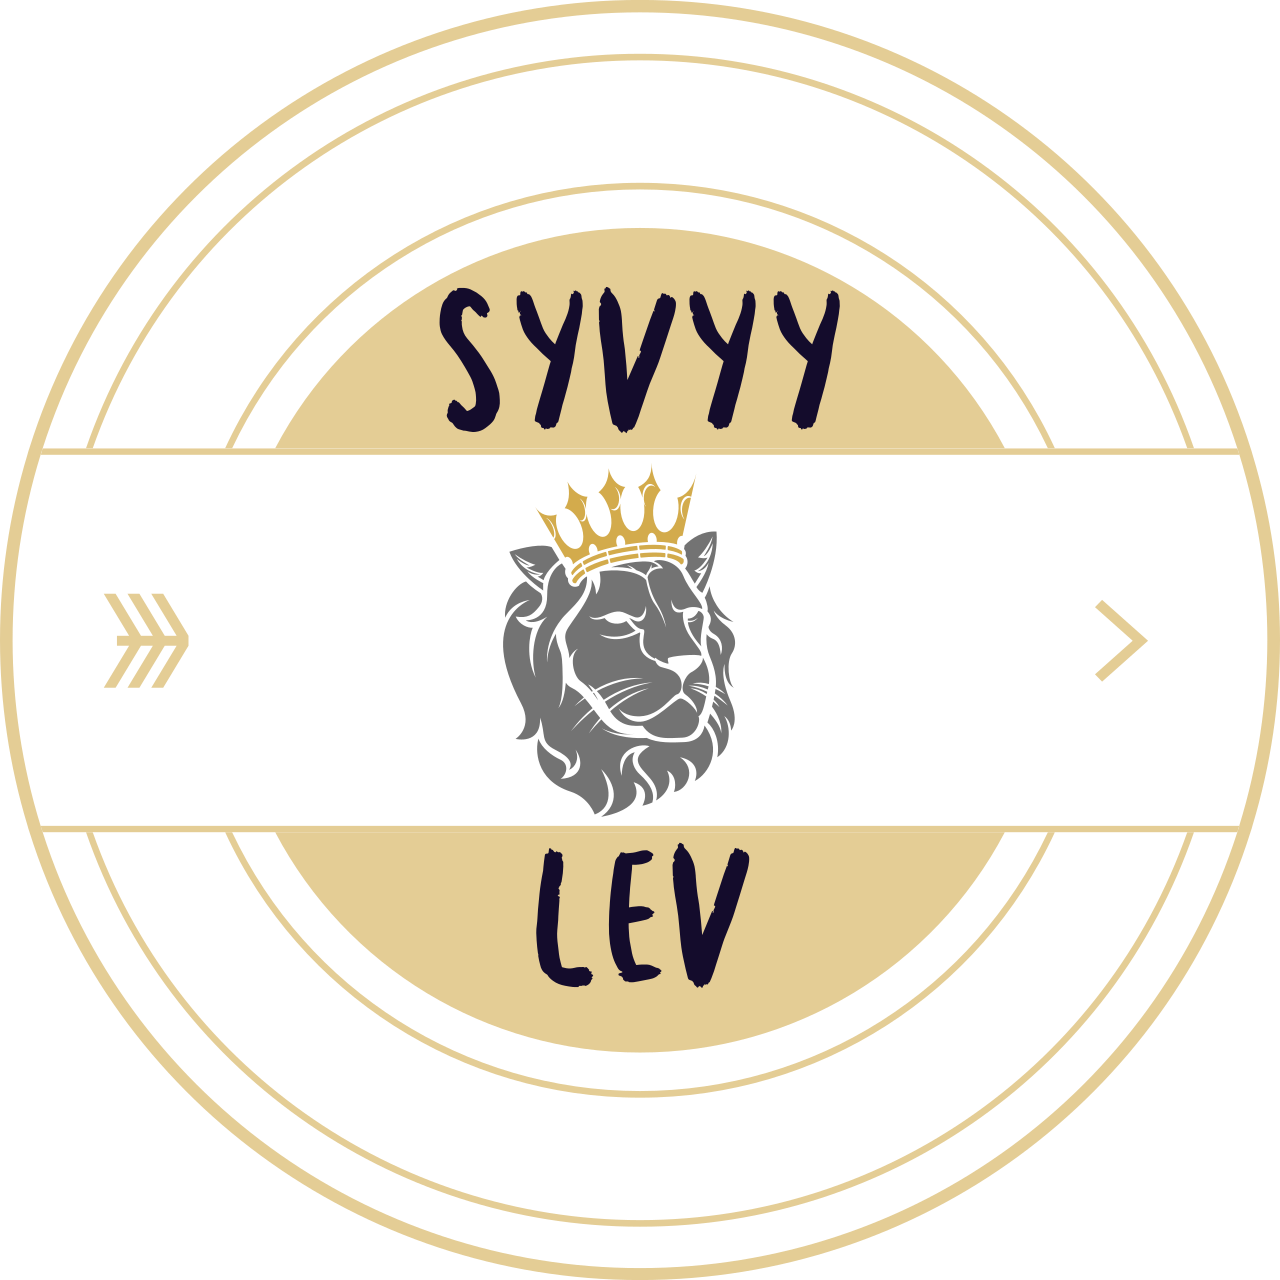 Syvyy's logo